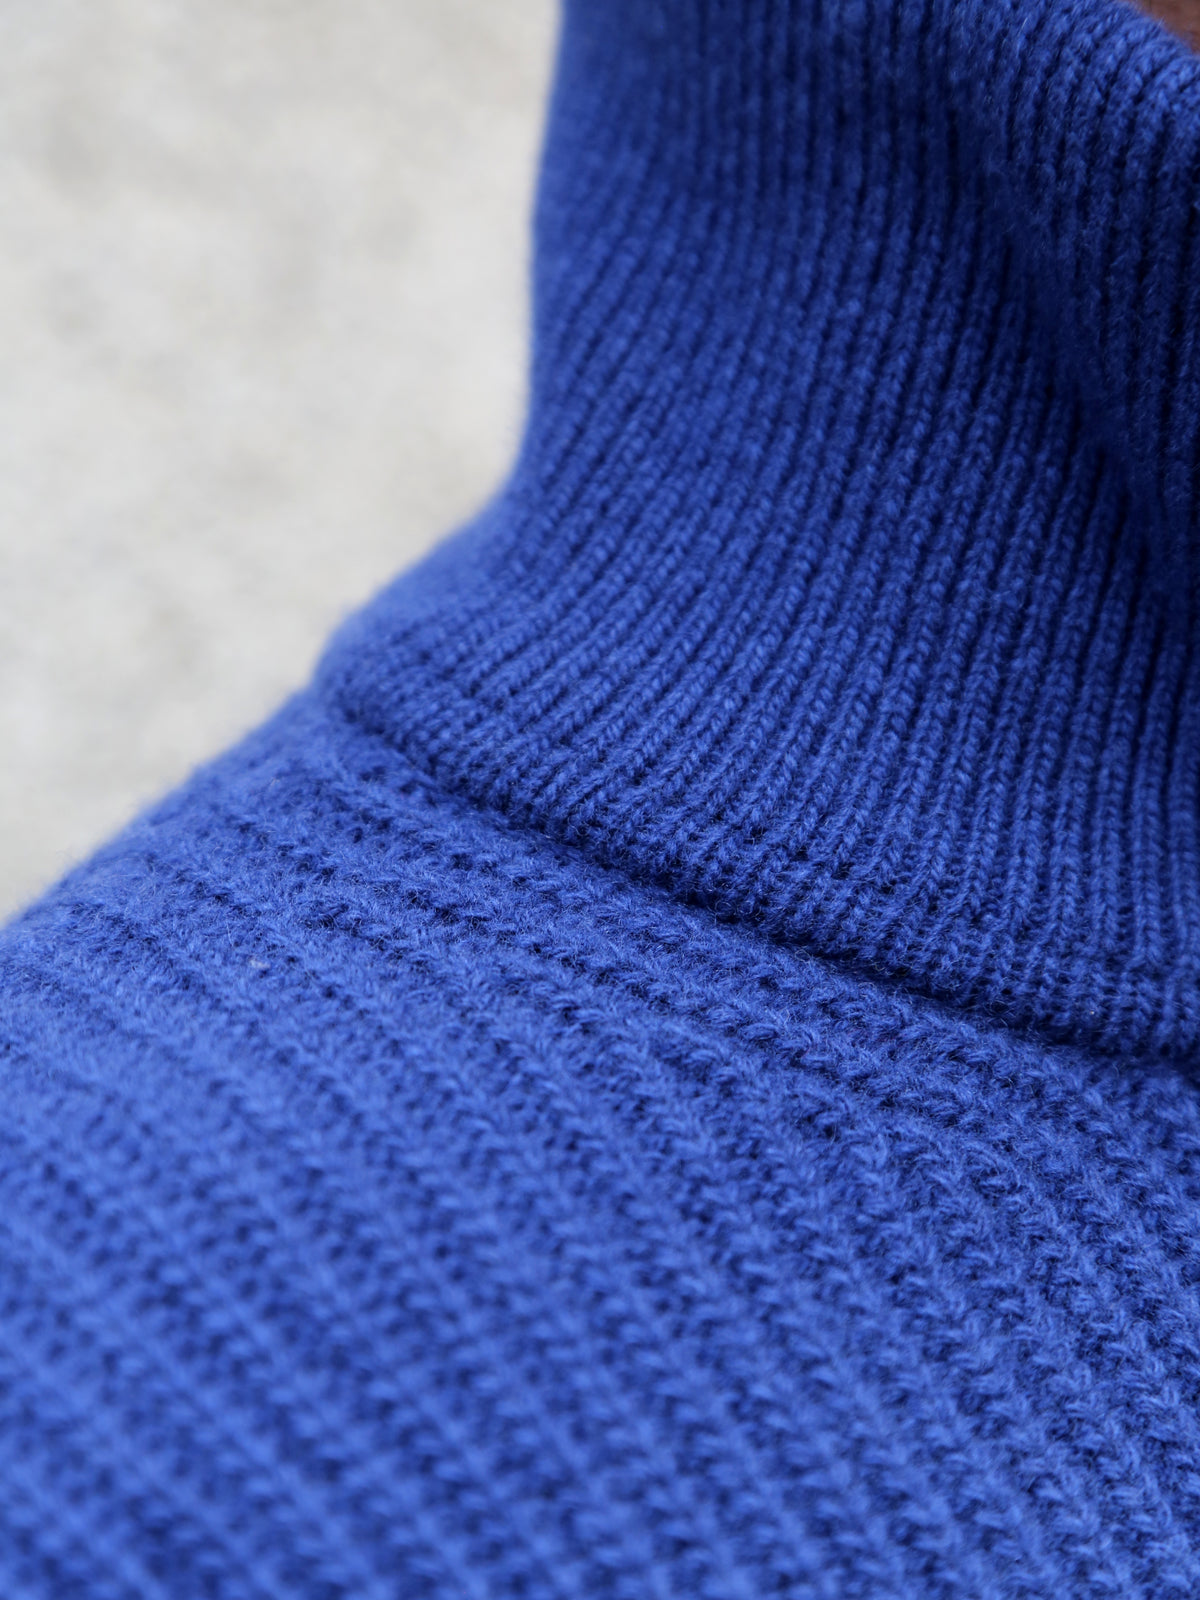 Nudie Jeans August Half Zip Sweater - Royal Blue